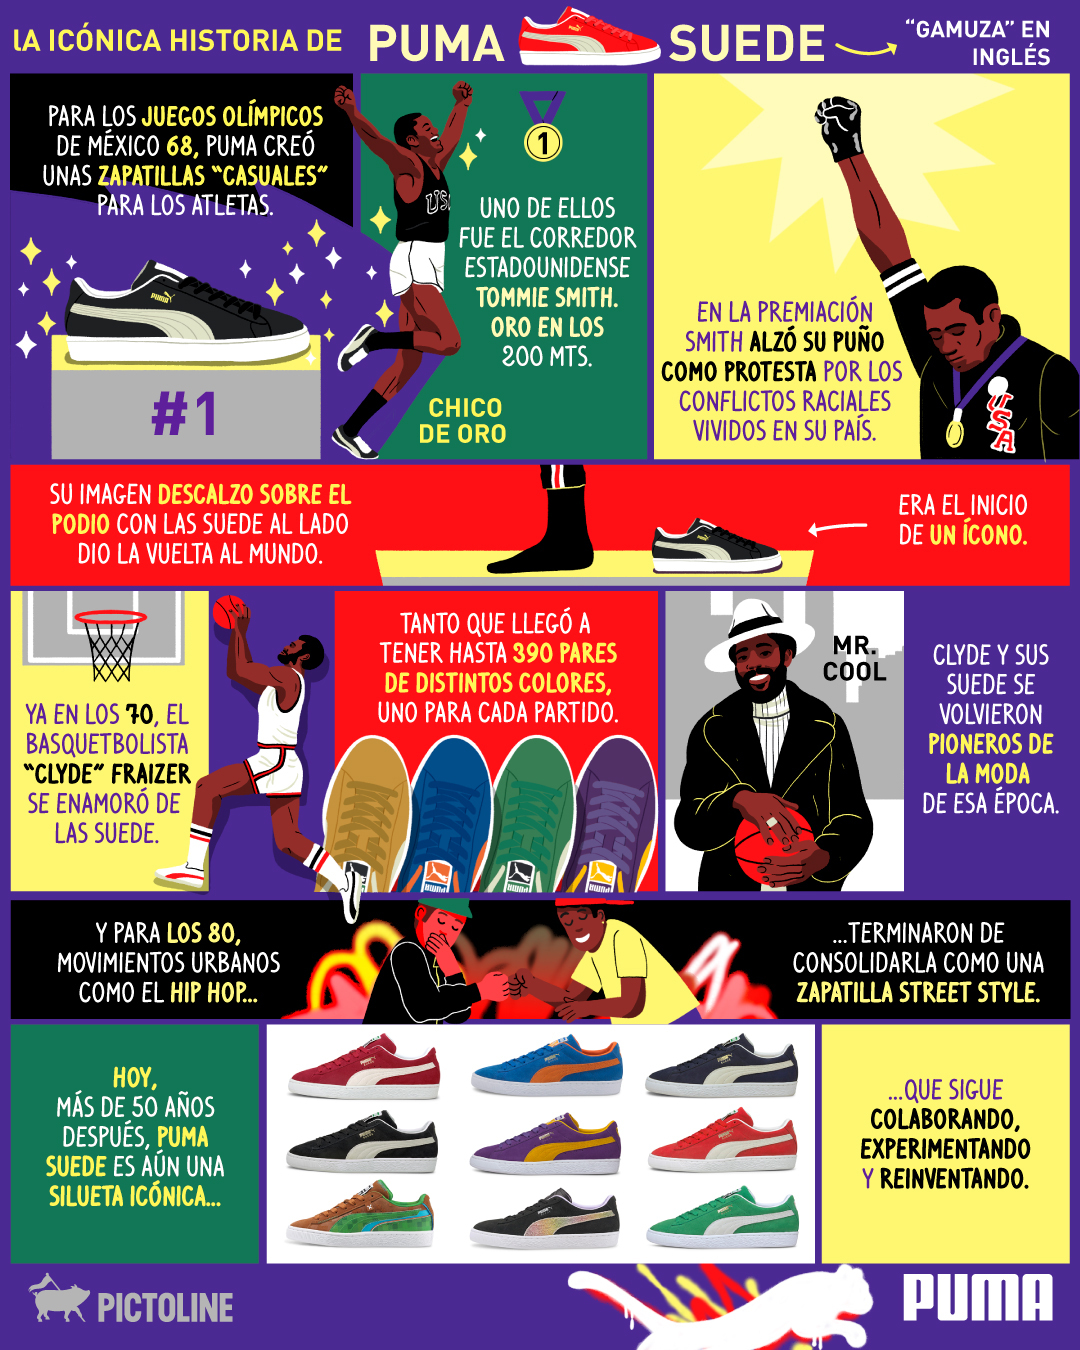 Del atletismo 🏃🏽 al basquetbol 🏀 hasta el hip hop 🎤 La historia de unos sneakers icónicos 👆🔥 #sneakers #iconicos #tenis #atletismo #basquetbol #hiphop